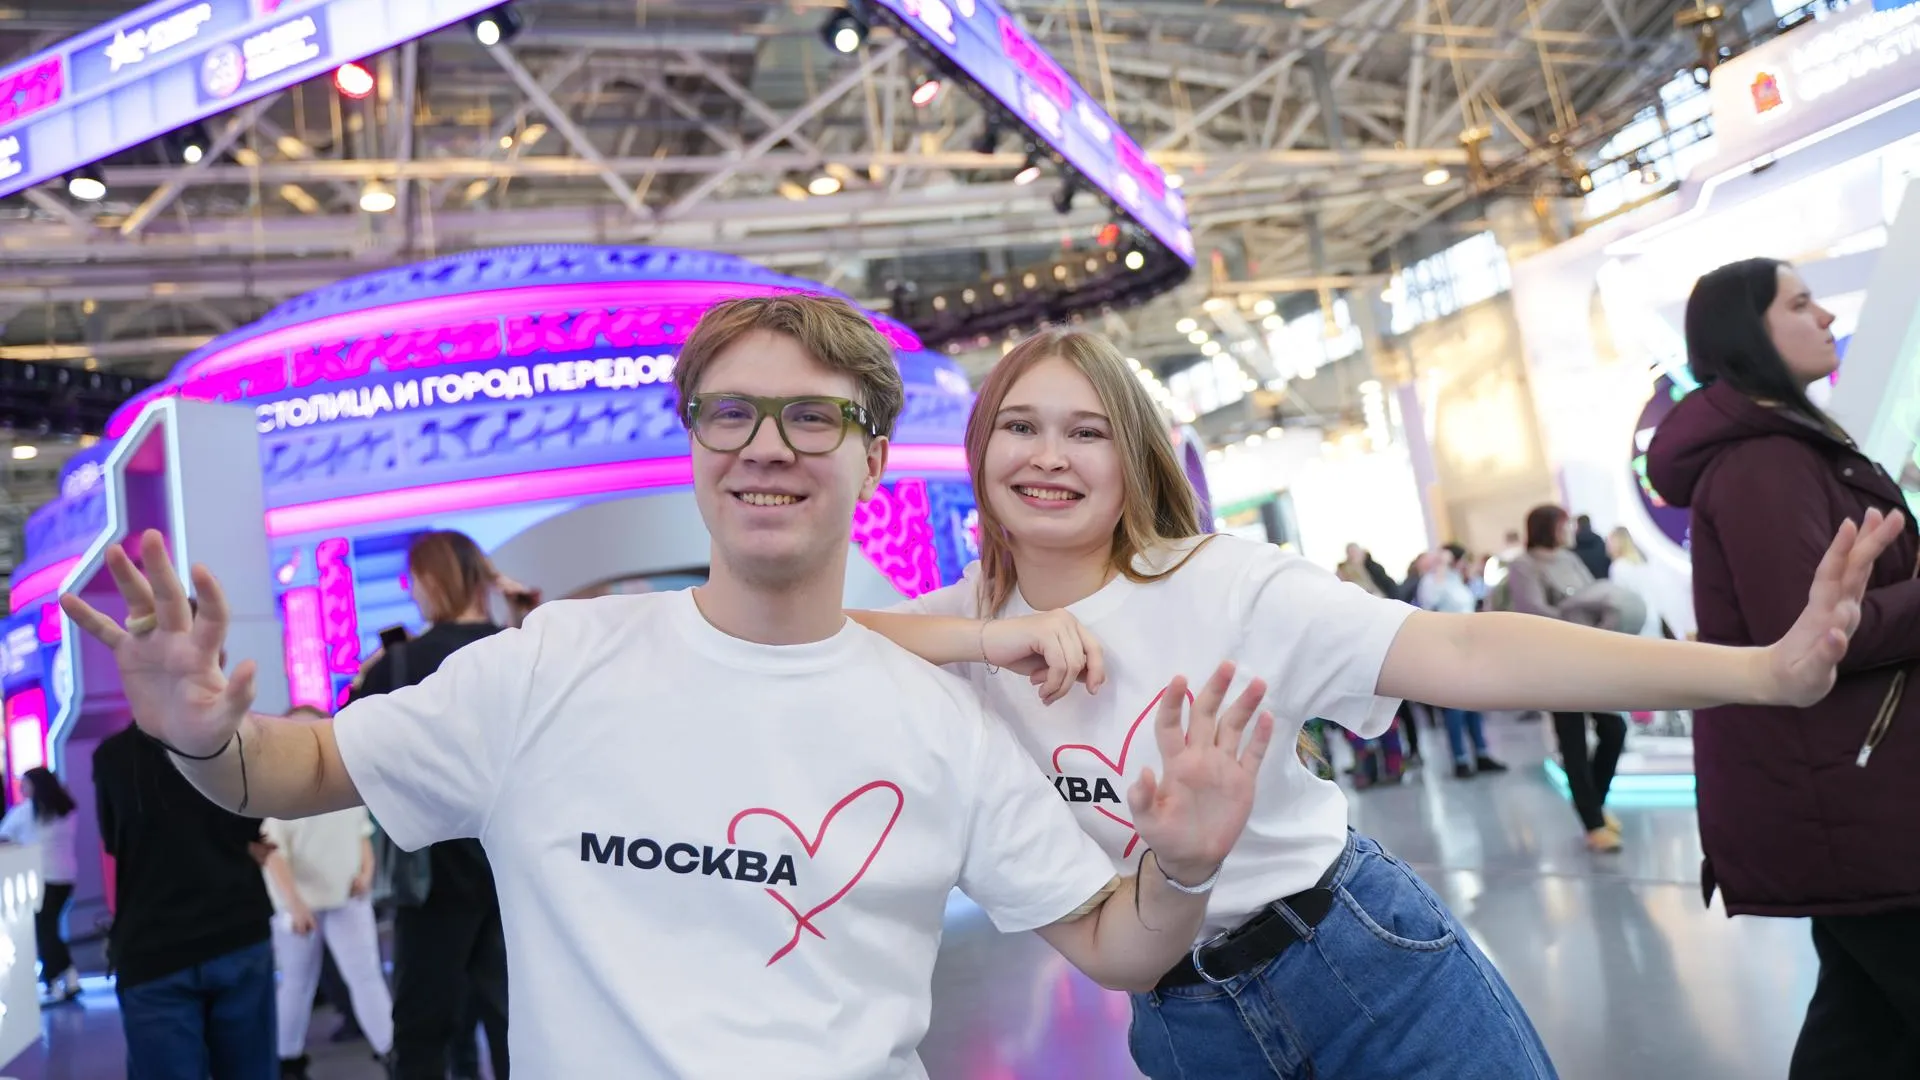 В пространстве Москвы на выставке «Россия» месяц посвятят проектам для молодежи